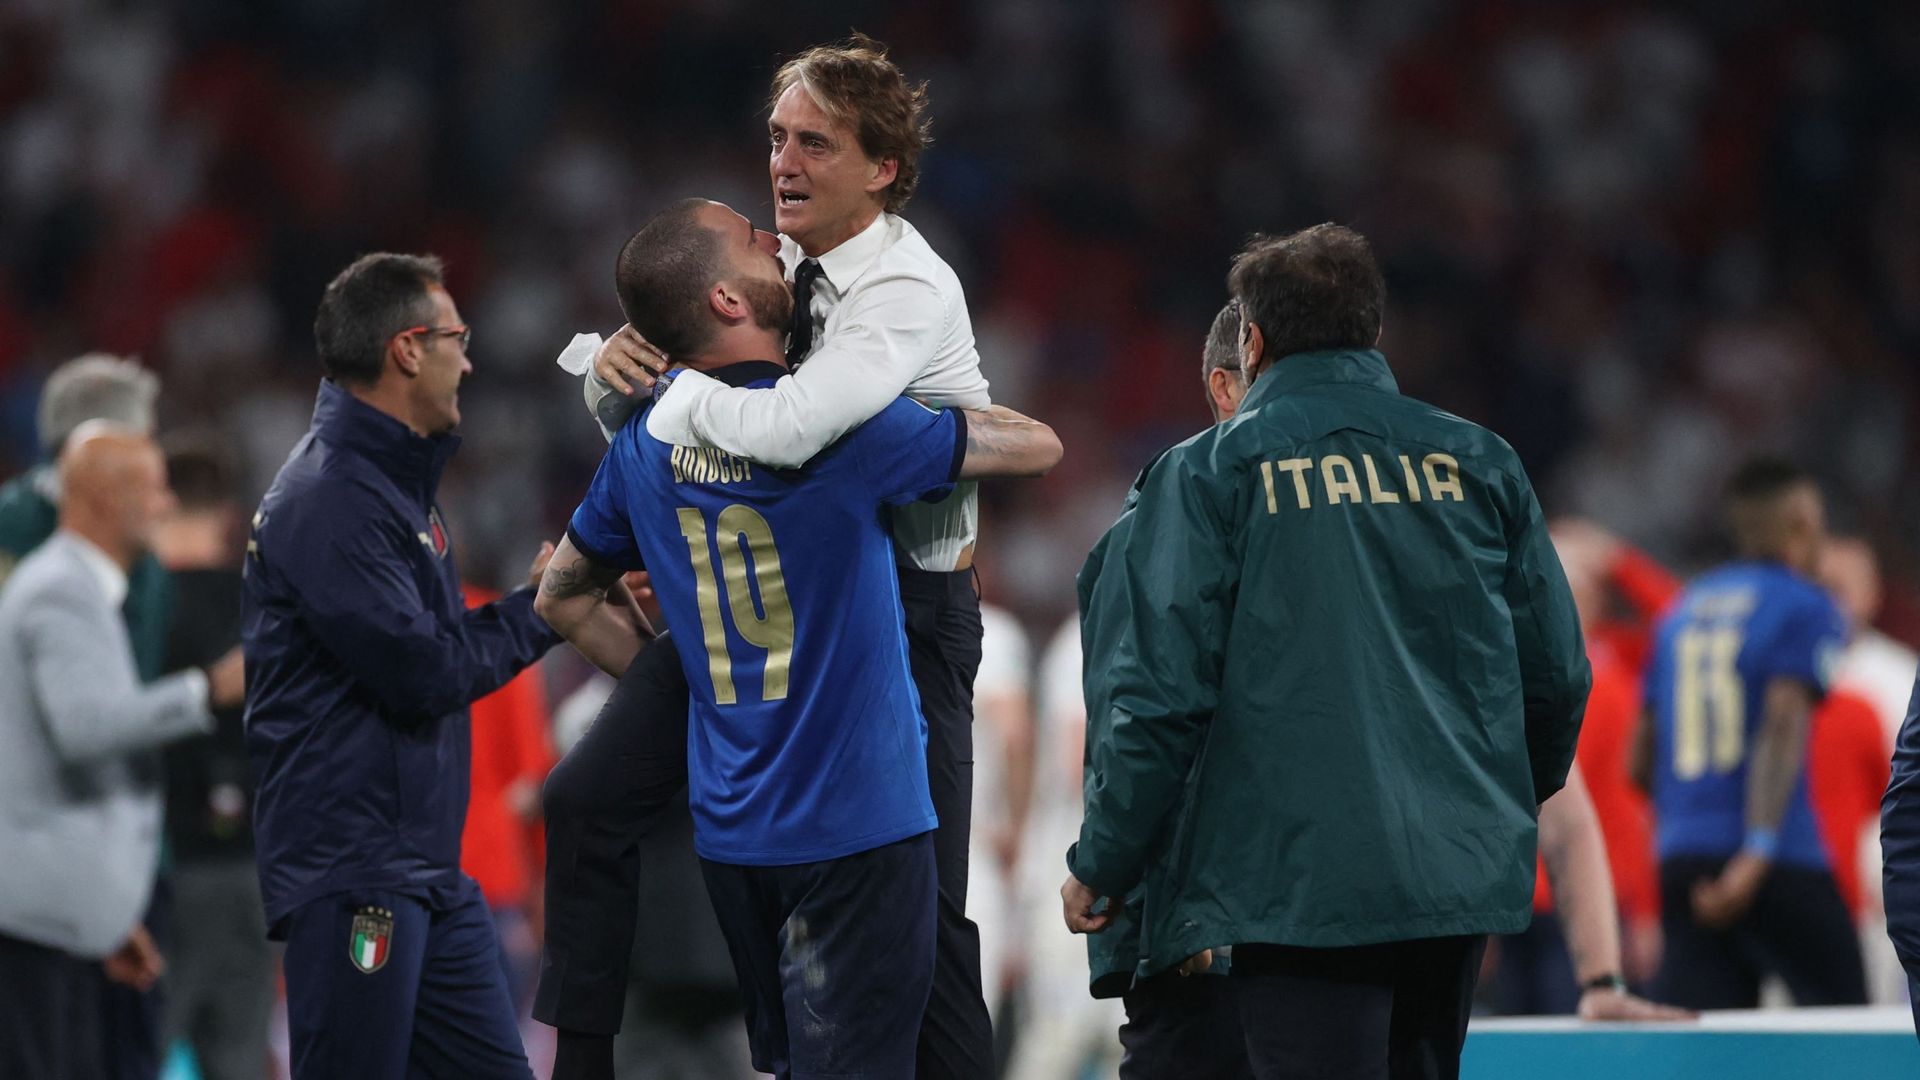 L'Italie de Roberto Mancini est devenue championne d'Europe en battant l'Angleterre aux tirs au but. Une victoire marquée de l'empreinte de Roberto Mancini.